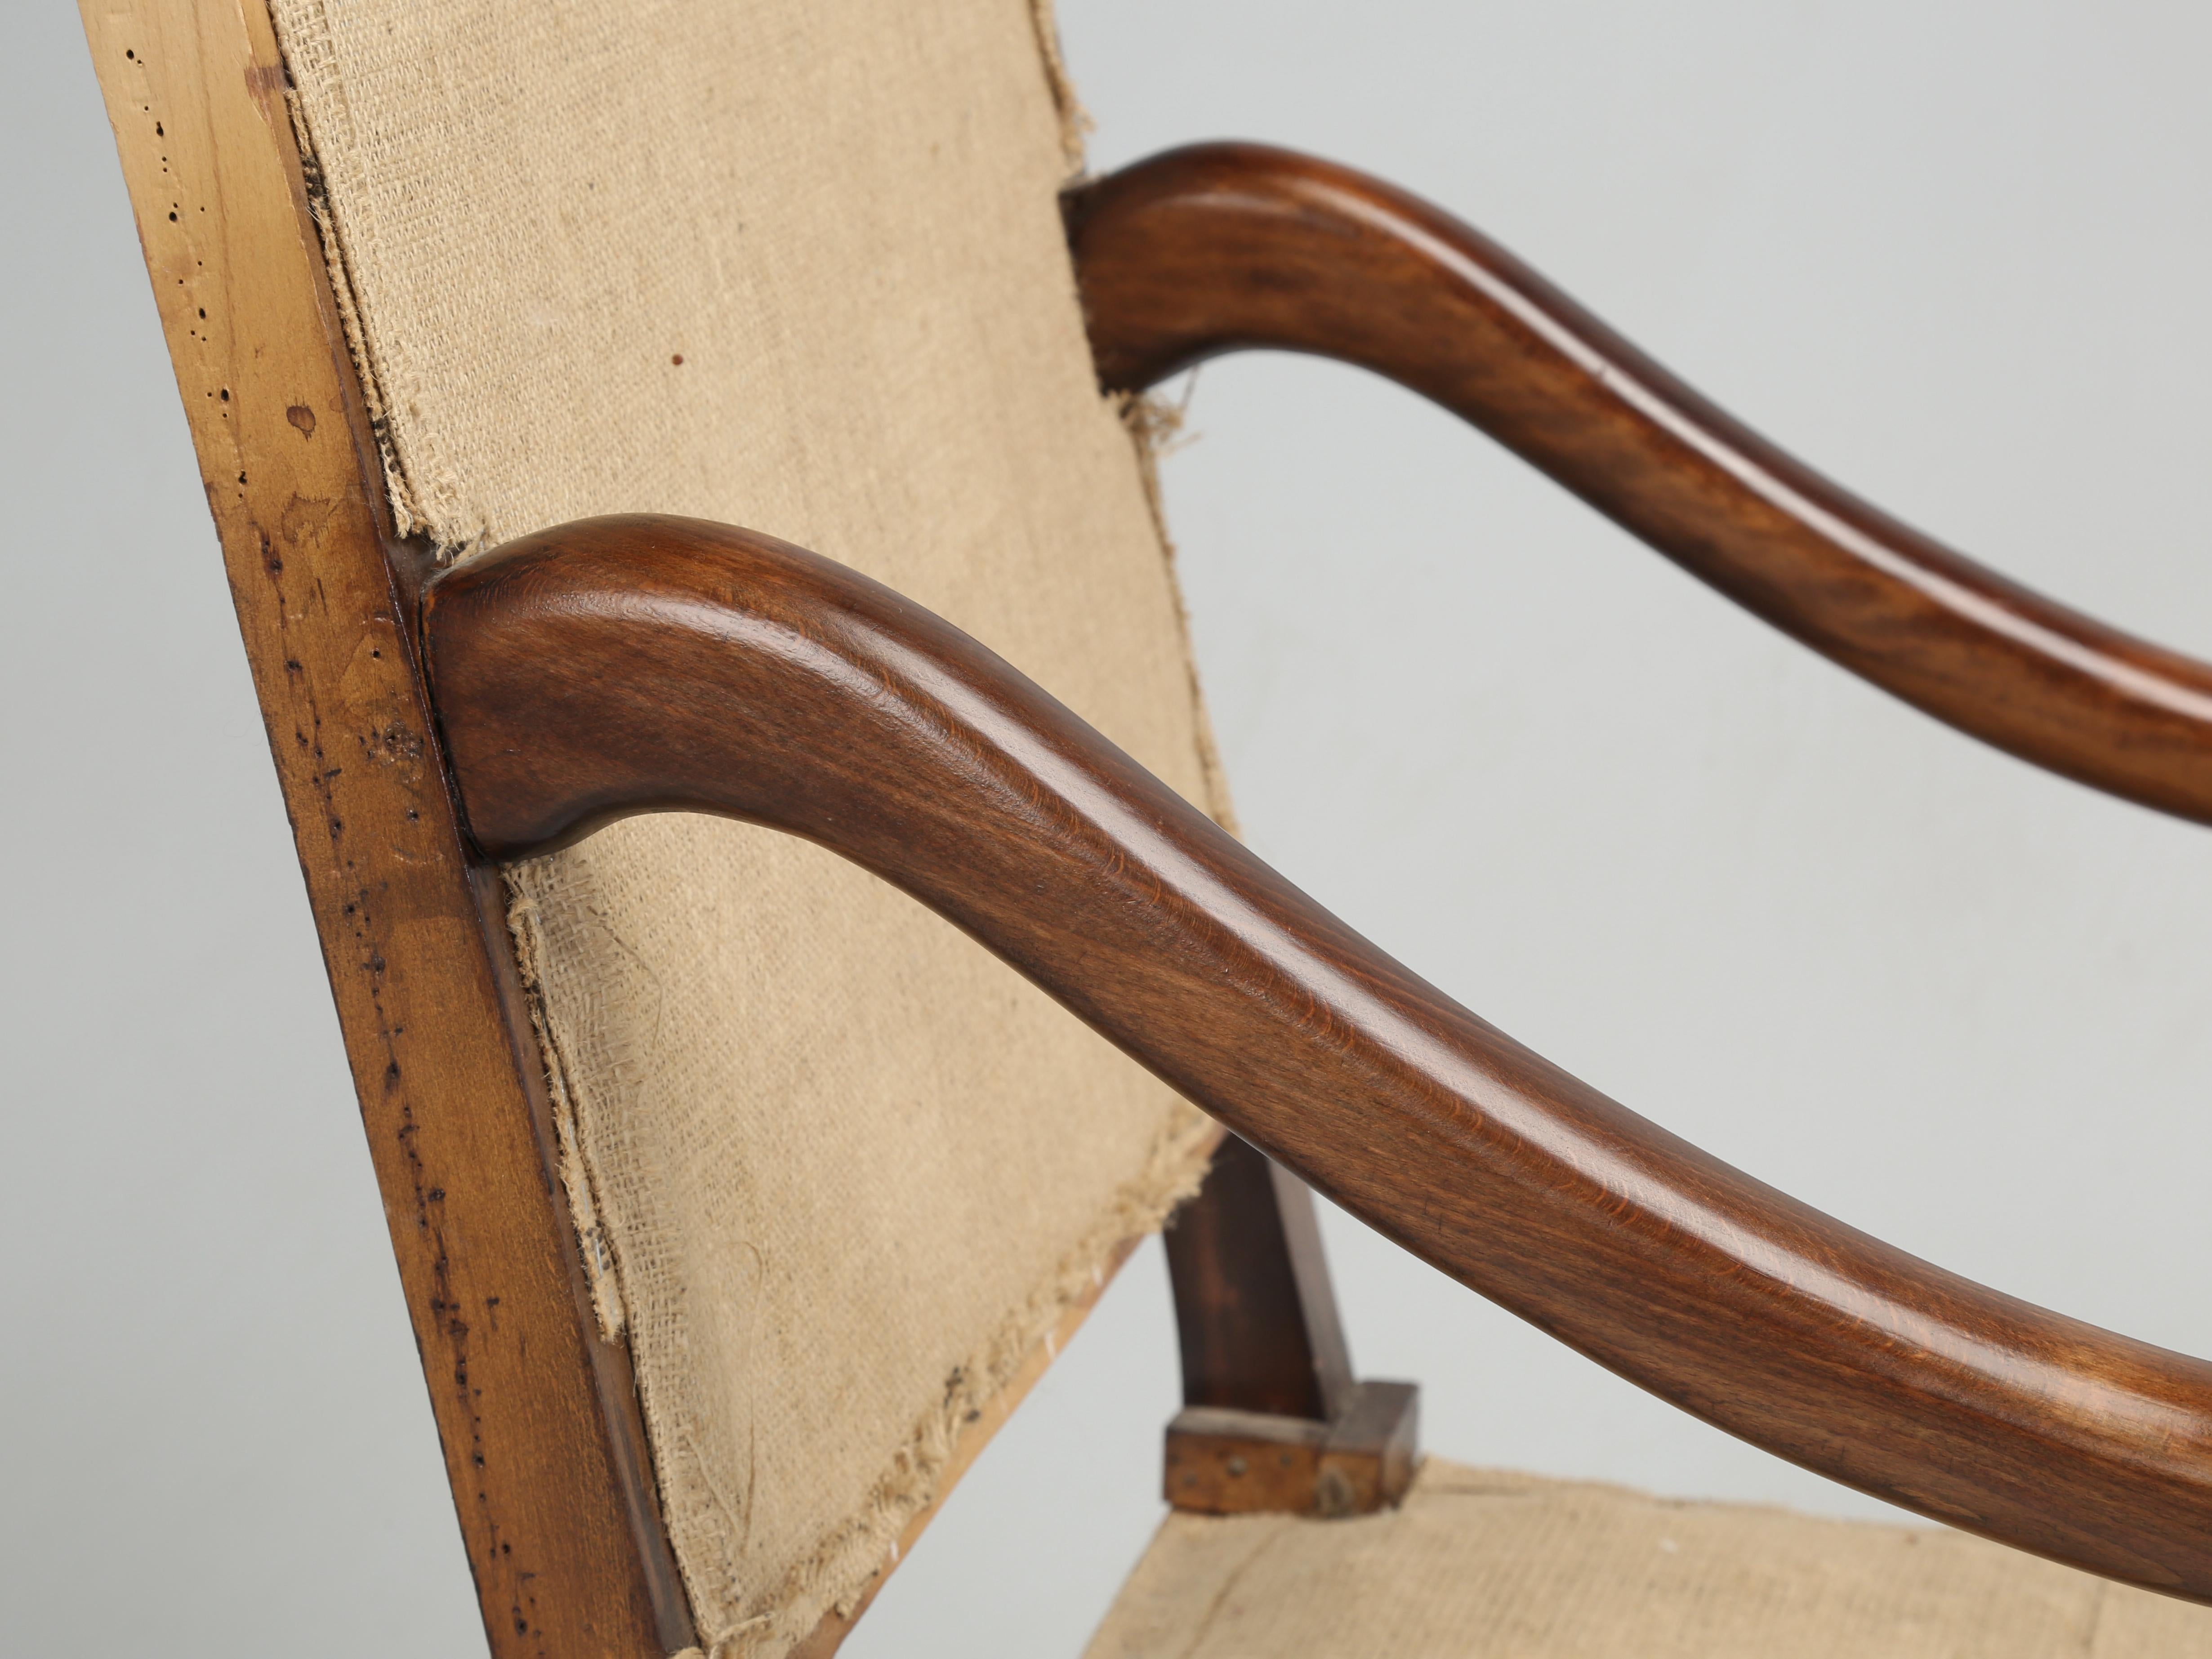 Paire de chaises à accoudoirs Os De Mouton classiques françaises qui sont assez anciennes pour avoir été assemblées avec des chevilles en bois. La présence de chevilles en bois indique généralement que les chaises ont été fabriquées au début des